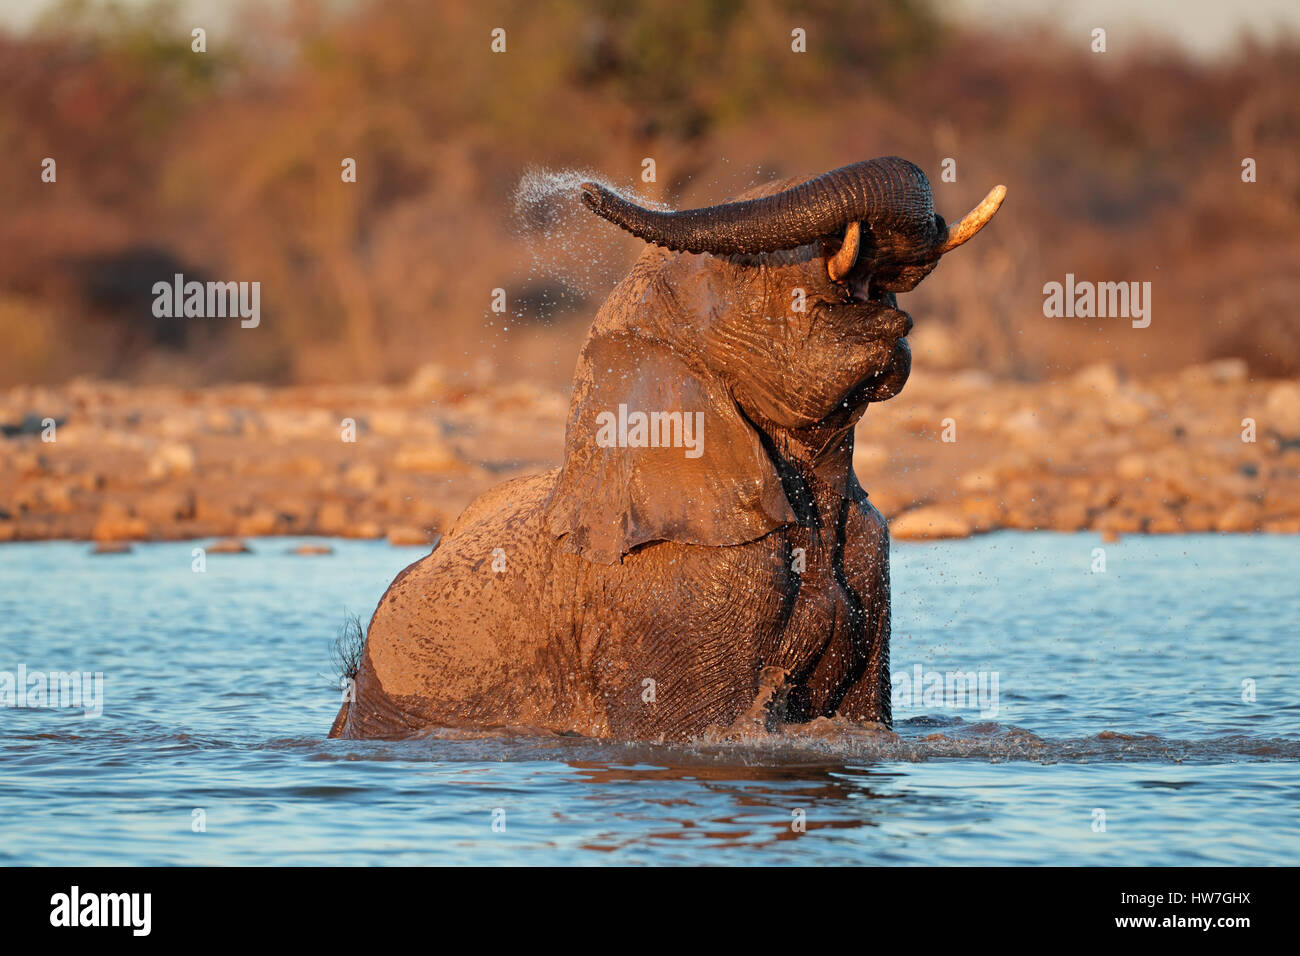 Elefante africano (Loxodonta africana) giocando in acqua, il Parco Nazionale di Etosha, Namibia Foto Stock